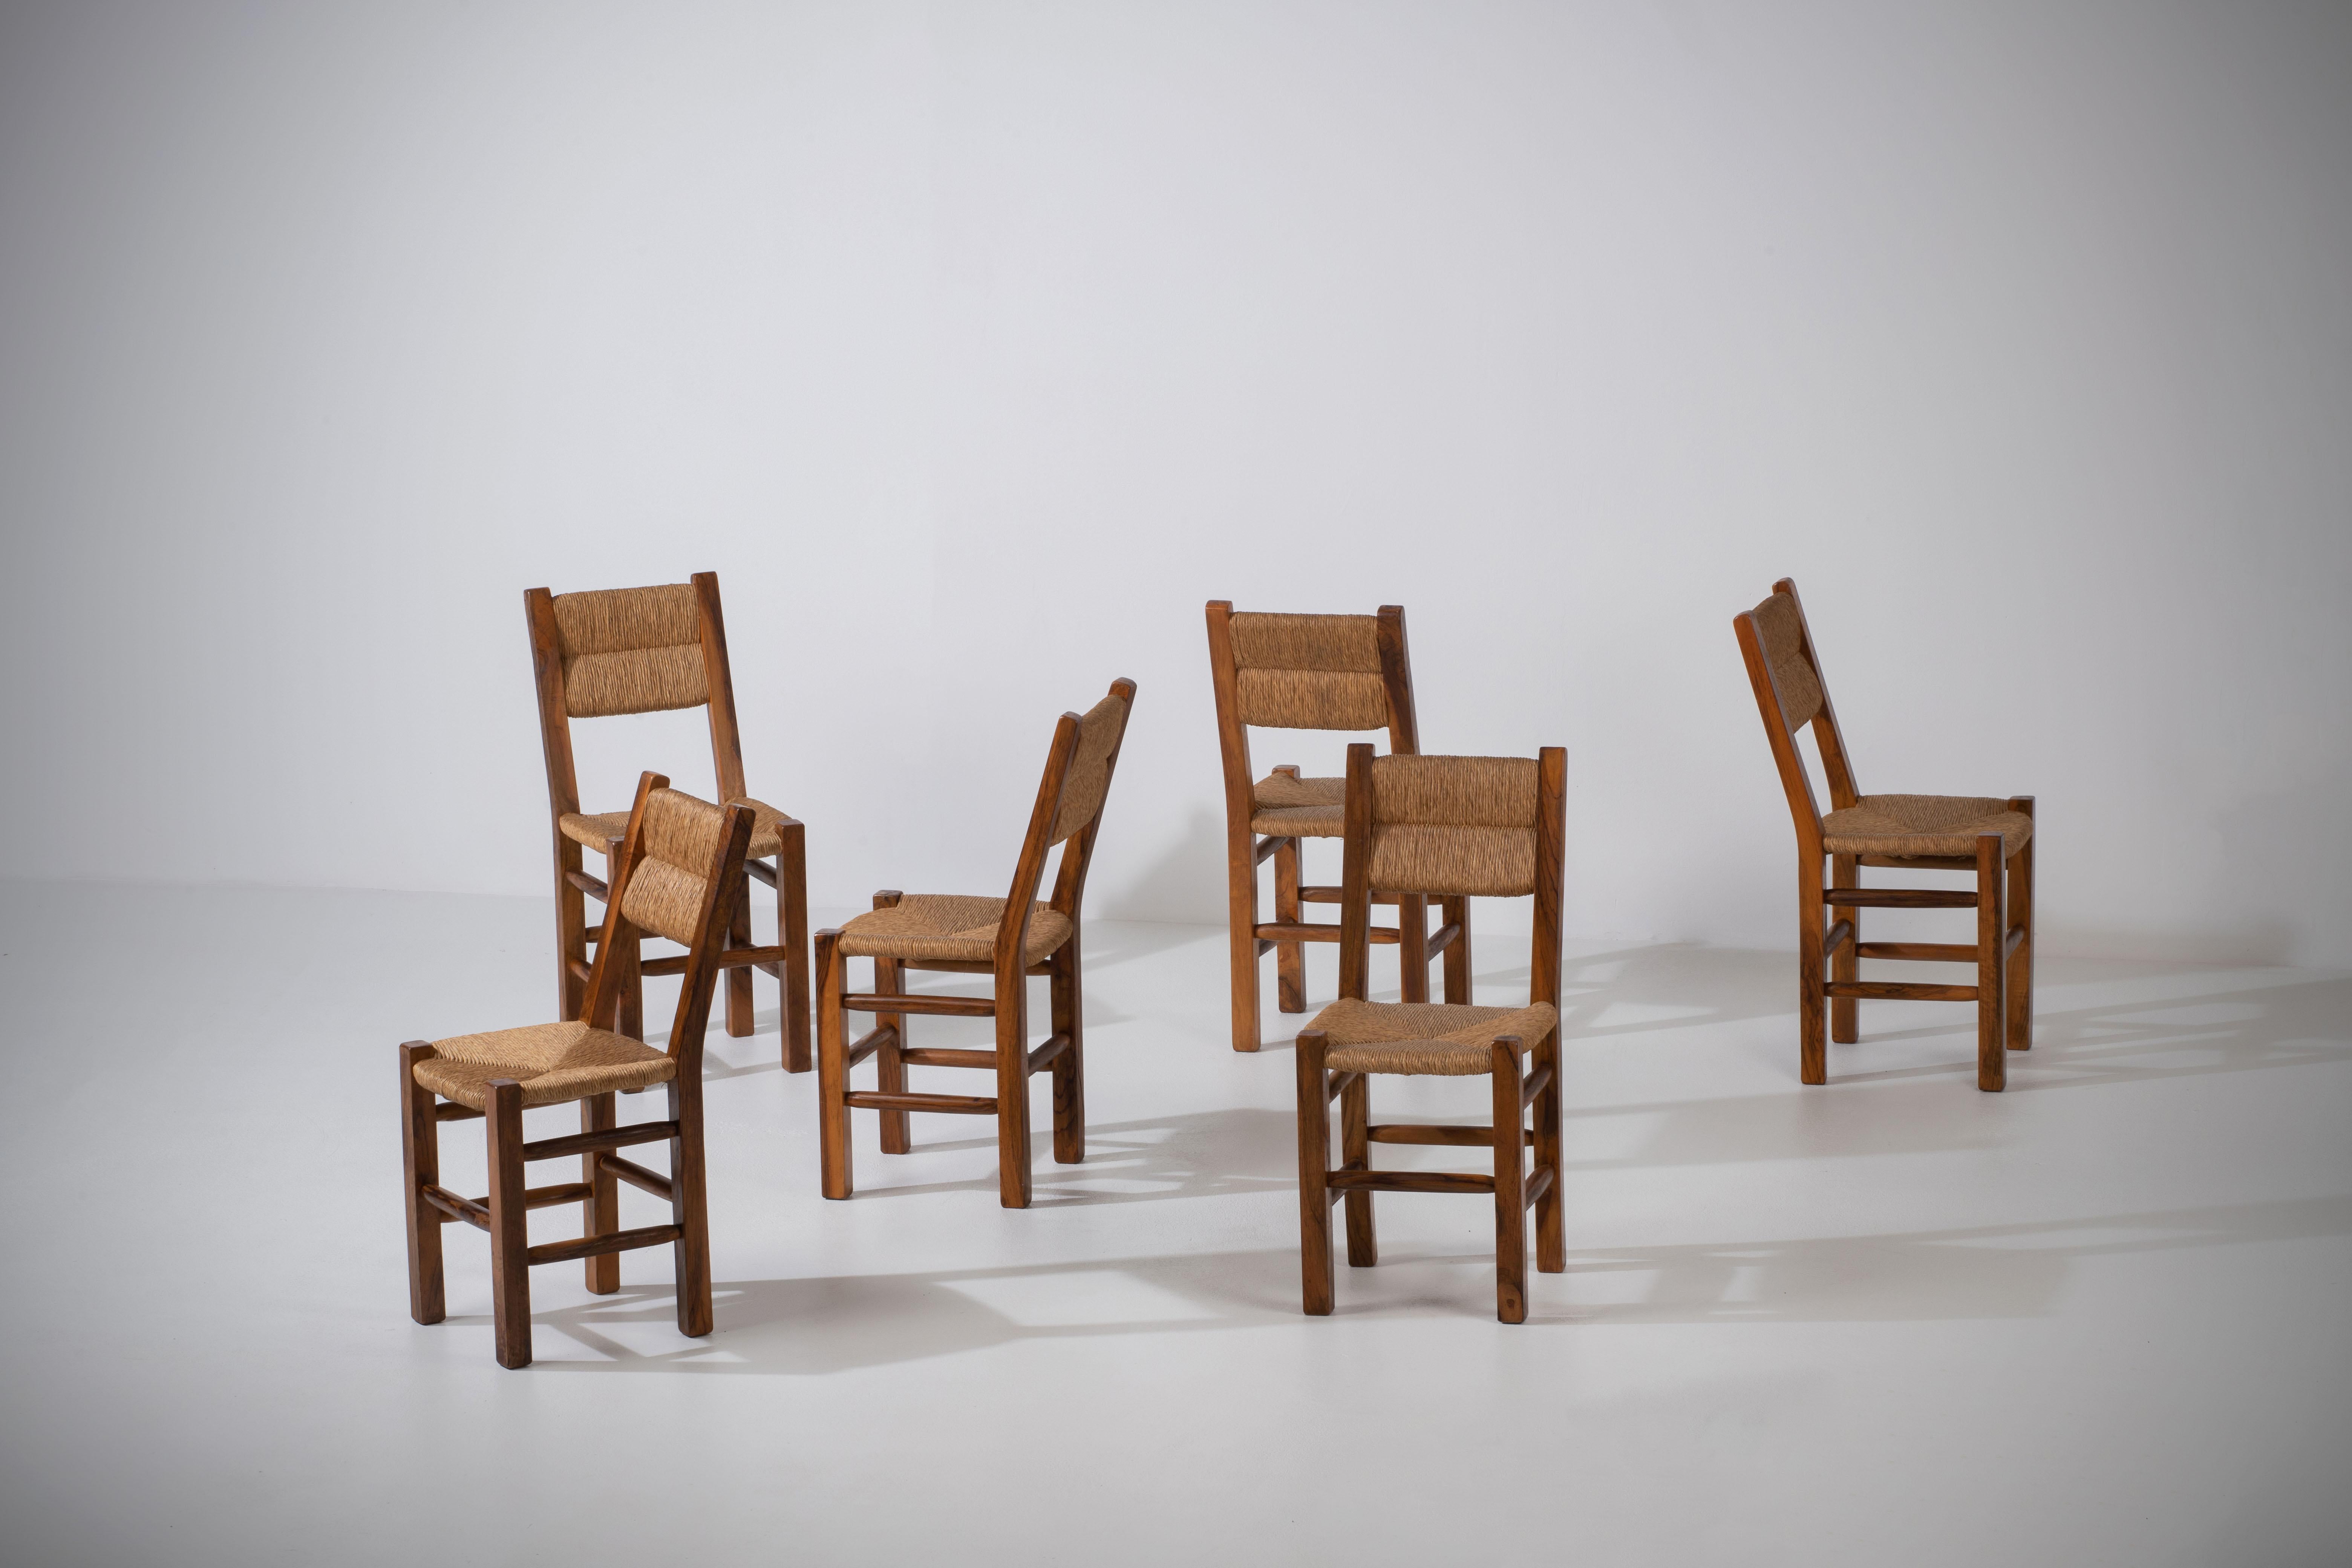 Voici un superbe ensemble de six chaises françaises du milieu du siècle, fabriquées avec une belle combinaison de bois d'olivier et d'assise en jonc. Ces chaises rendent hommage aux œuvres influentes de designers renommés tels que Charlotte